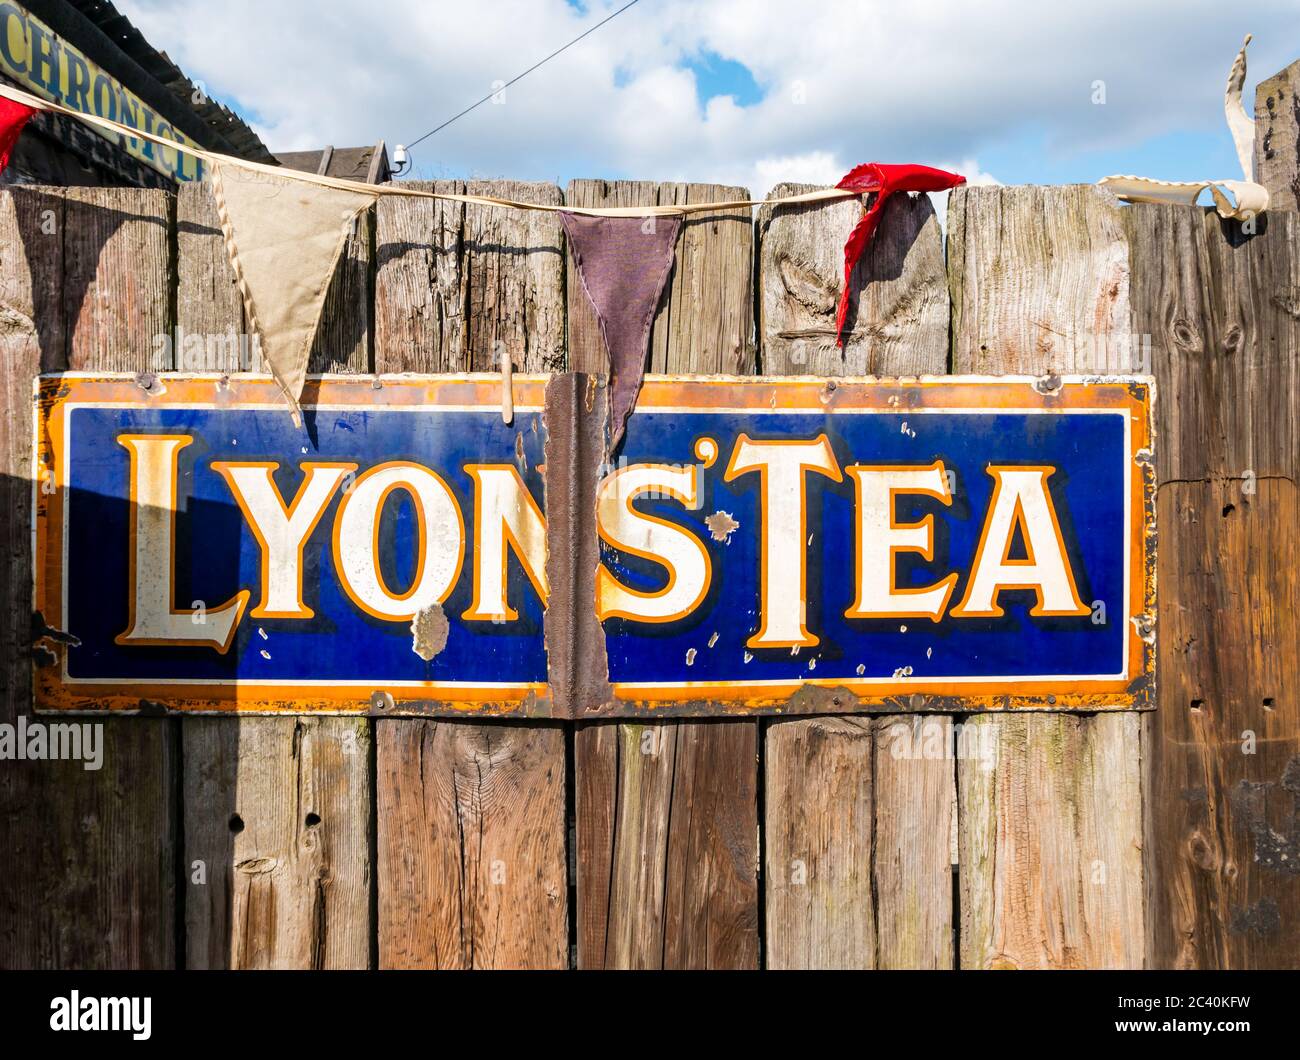 Panneau publicitaire de thé Lyons rétro à l'ancienne sur une clôture en bois, Angleterre, Royaume-Uni Banque D'Images